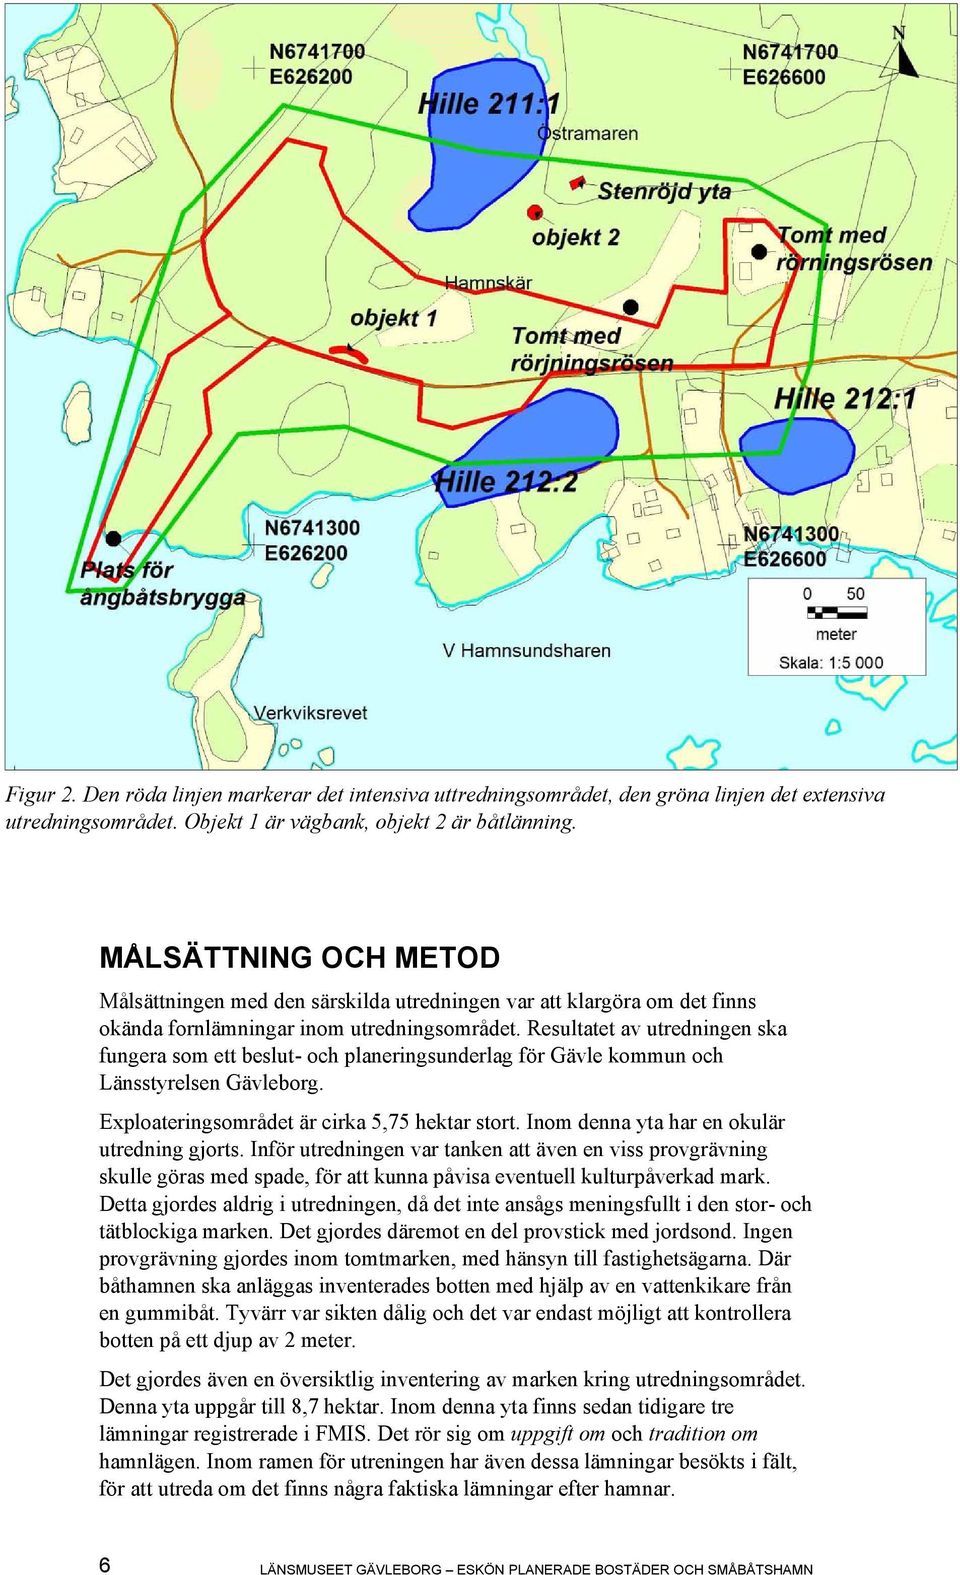 Resultatet av utredningen ska fungera som ett beslut- och planeringsunderlag för Gävle kommun och Länsstyrelsen Gävleborg. Exploateringsområdet är cirka 5,75 hektar stort.